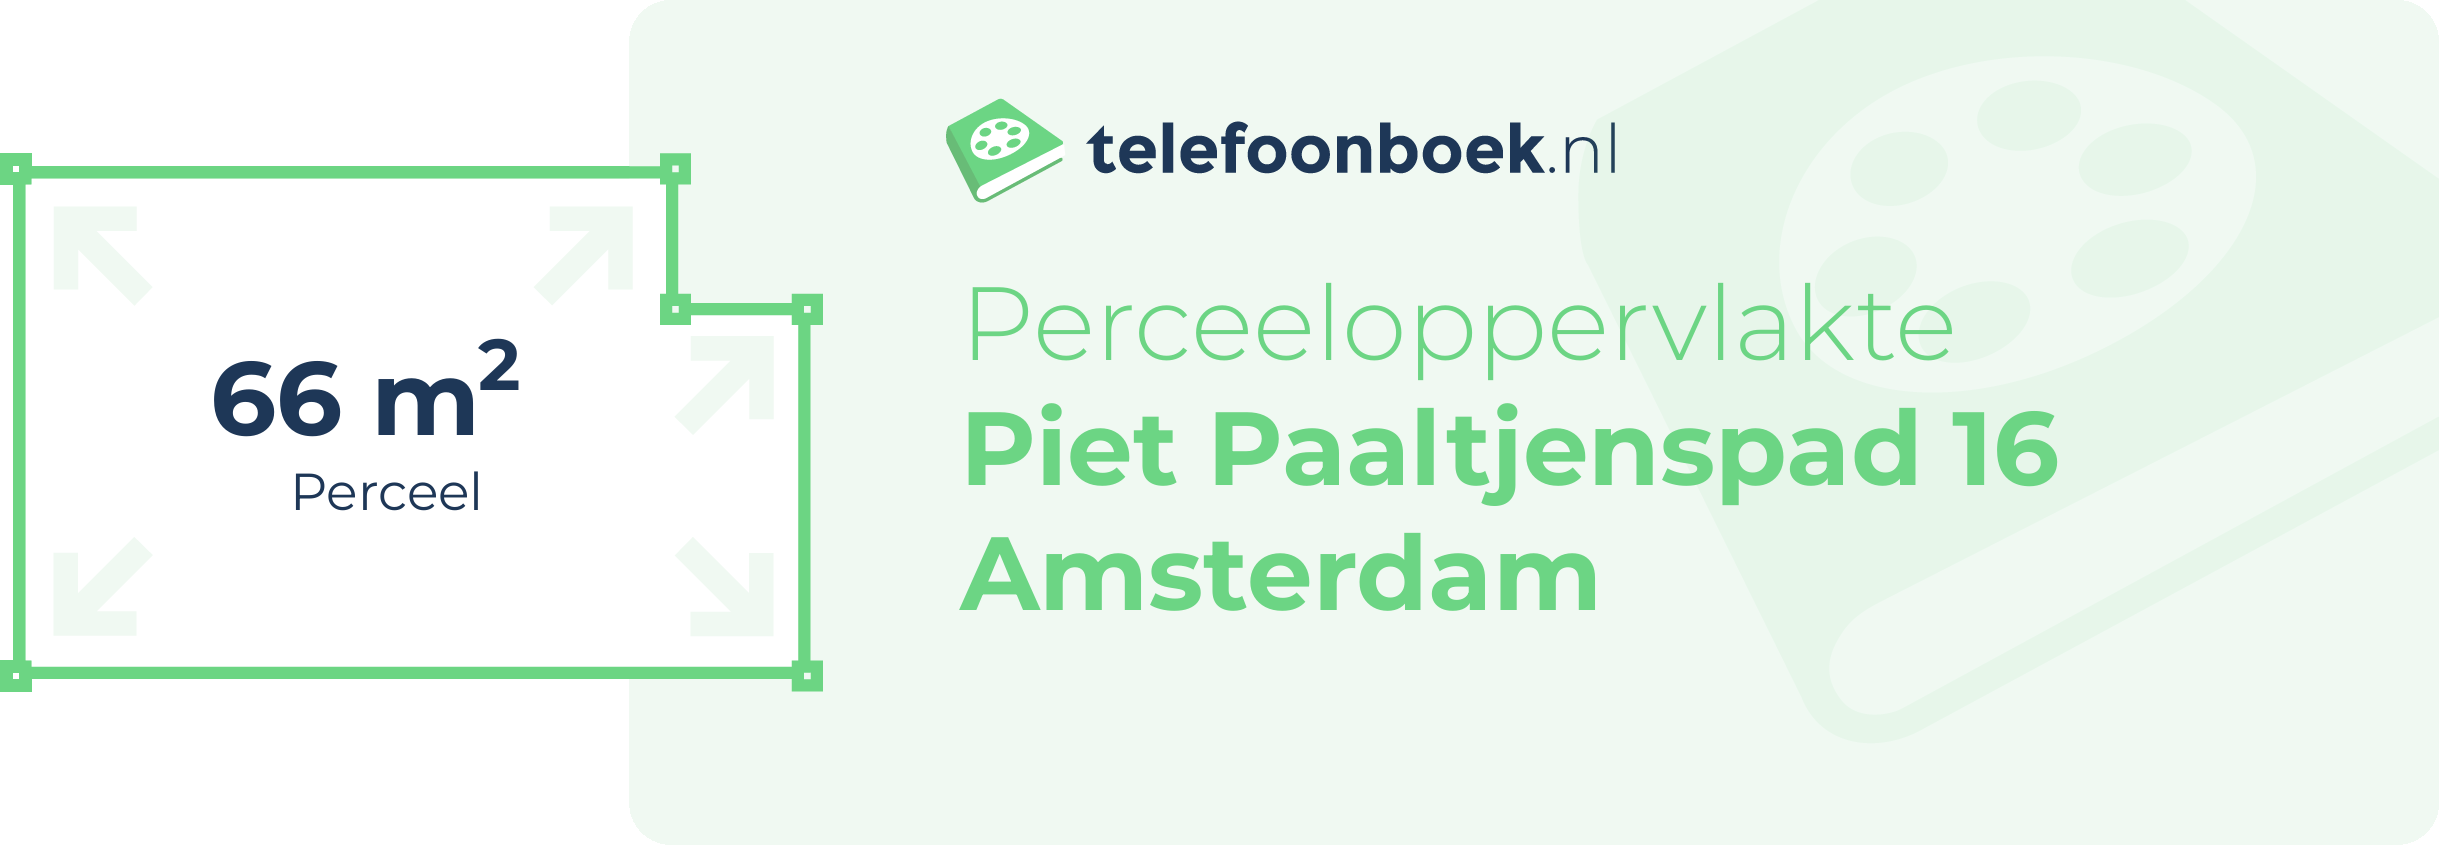 Perceeloppervlakte Piet Paaltjenspad 16 Amsterdam